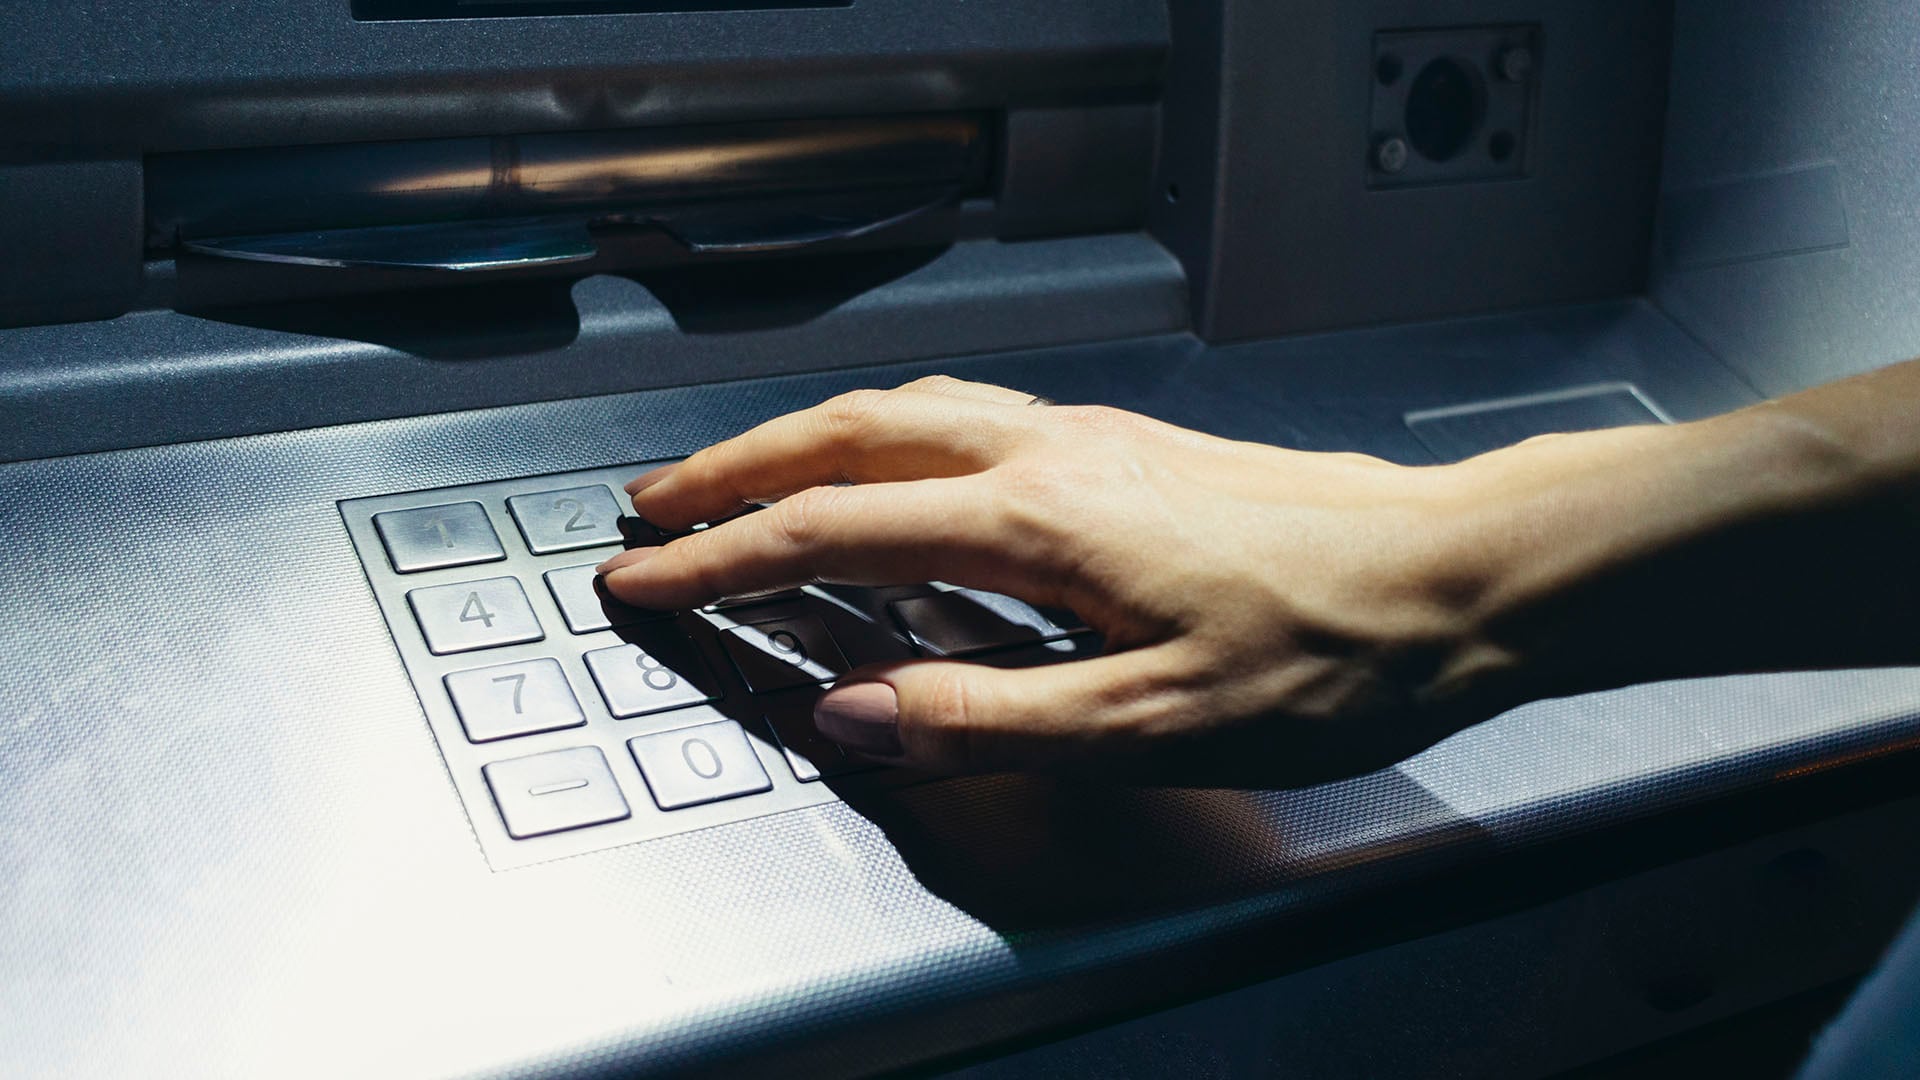 El peligro de esta modalidad es que los ciberdelincuentes solo necesitan una simple acción para robar el cajero. (Foto: Getty Images)